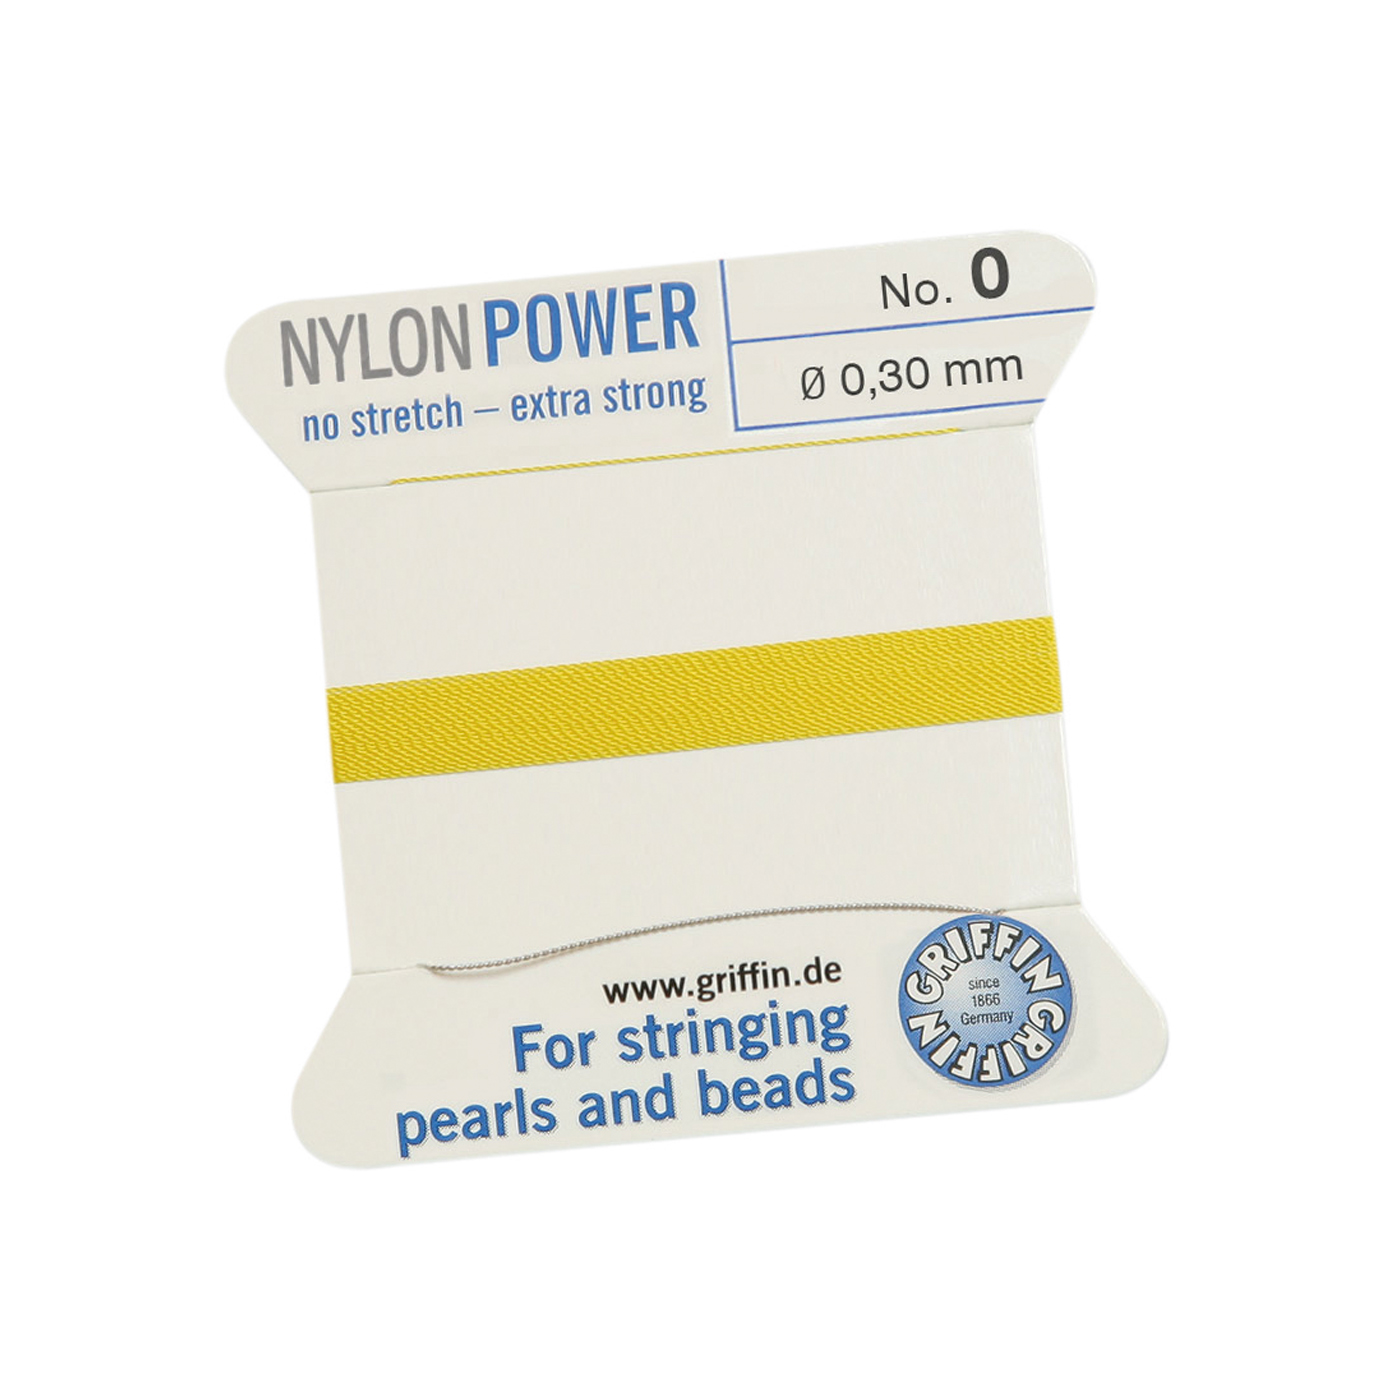 Bead Cord NylonPower, Light Yellow, No. 0 - 2 m